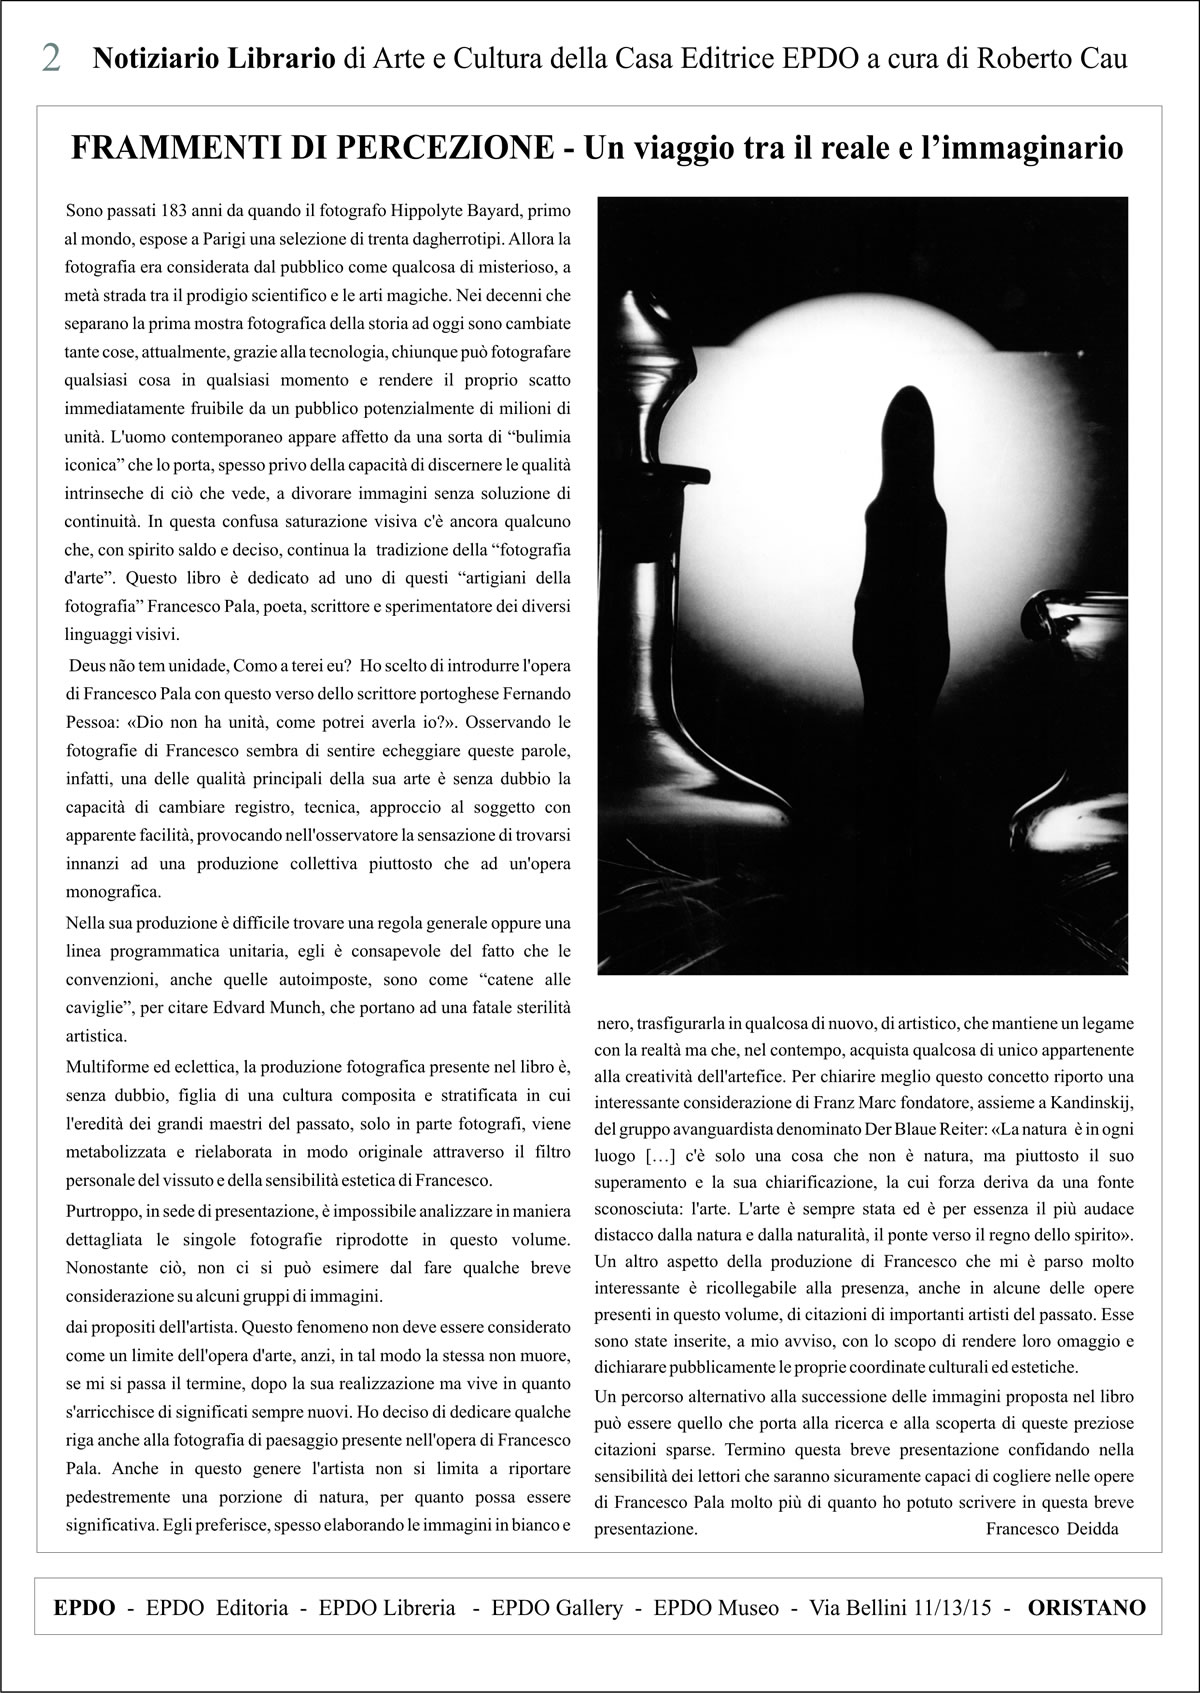 Notiziario Librairio EPDO - Francesco Pala